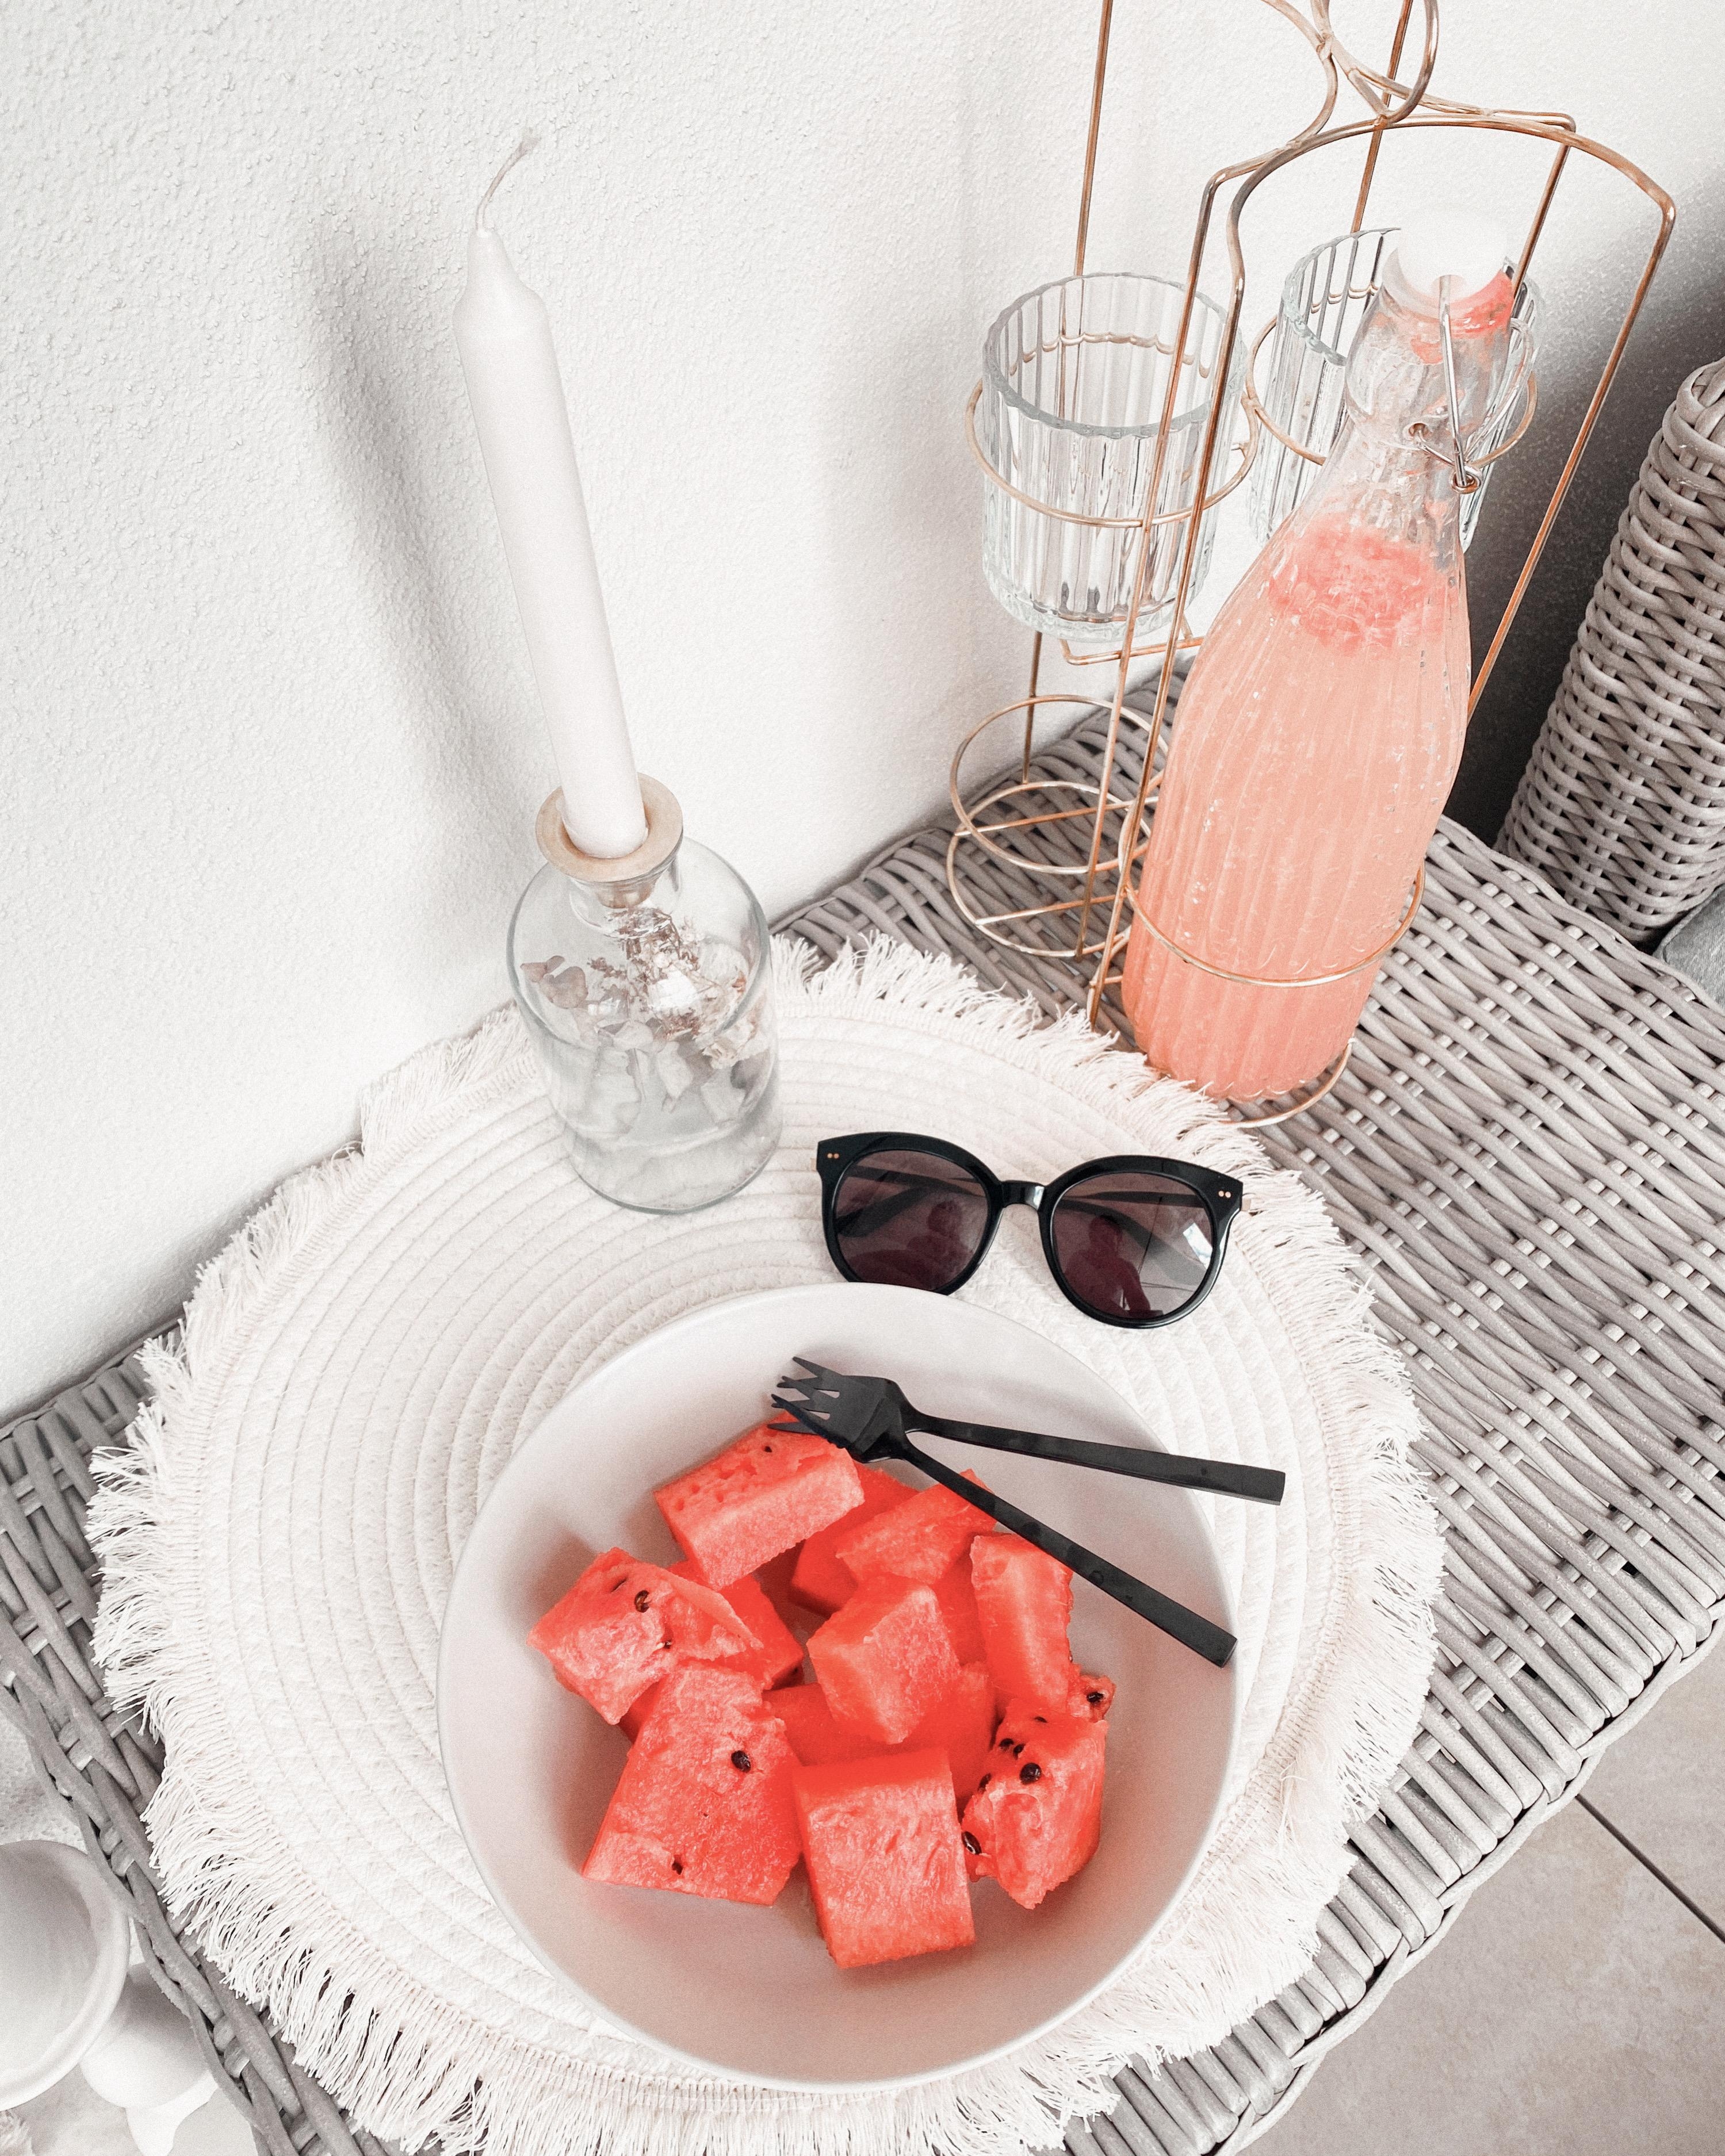 Sommer, Sonne, Melone 🍉 
#balkon#boho#snack#melone#sommer